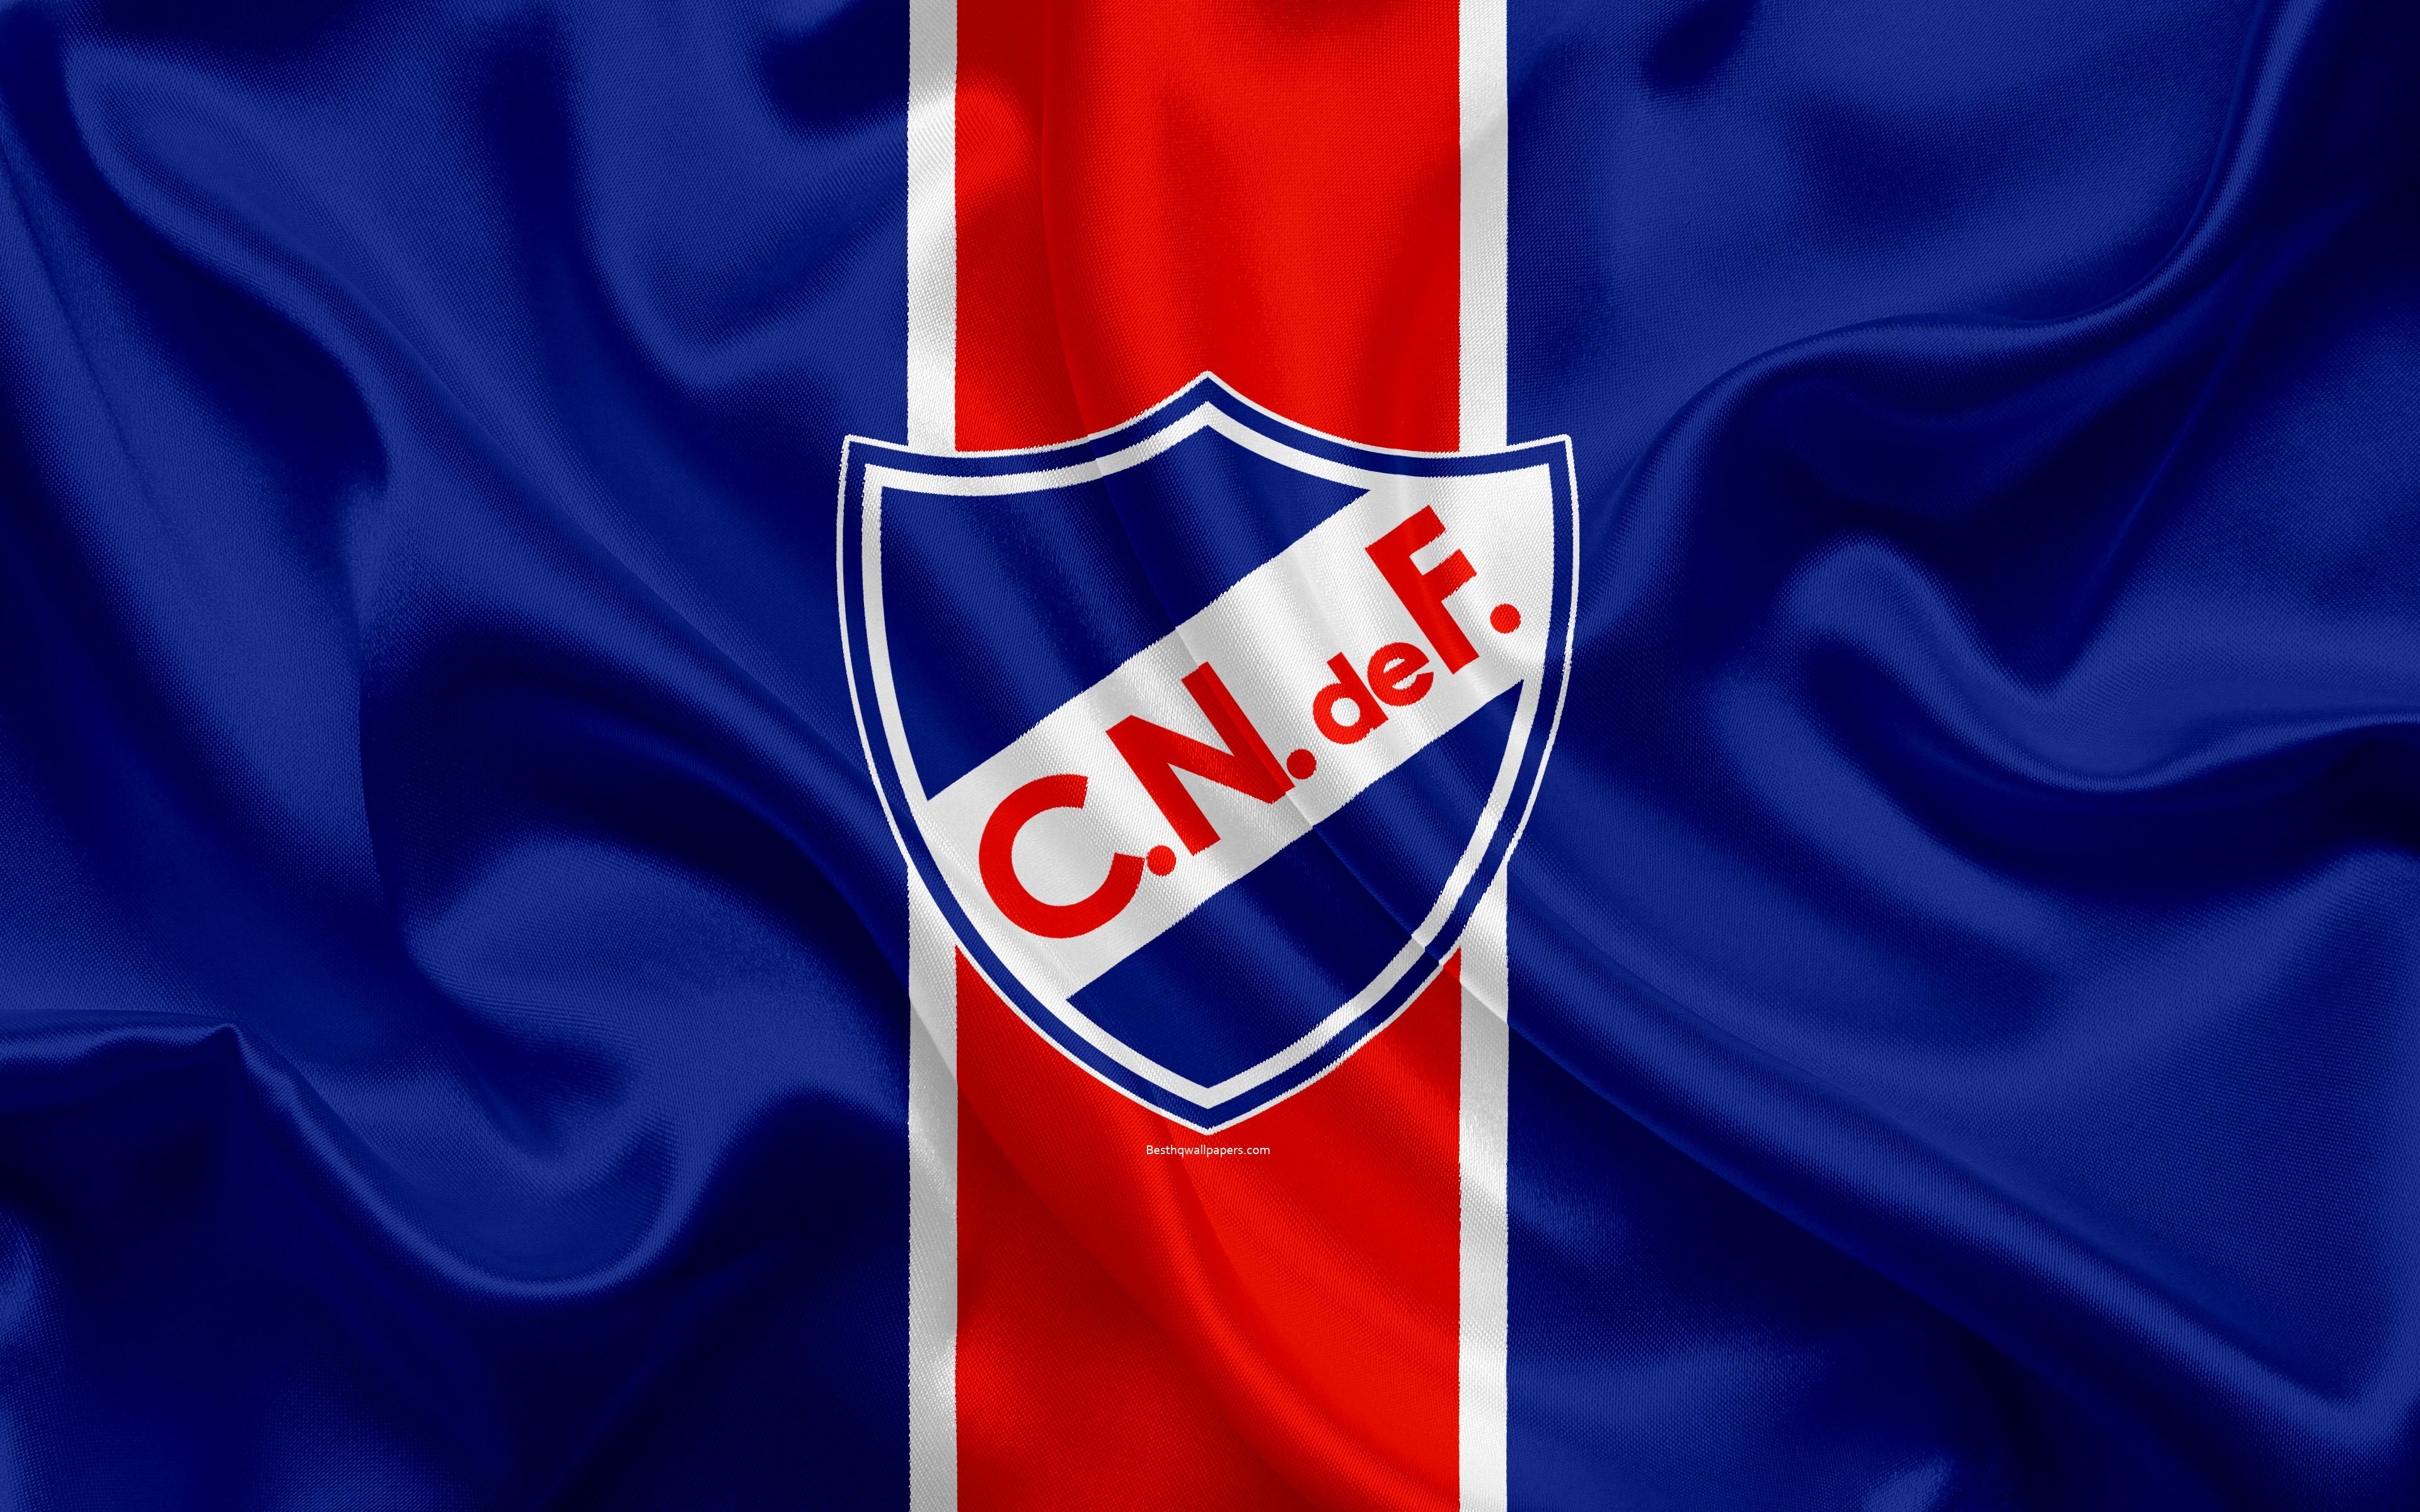 Download wallpaper Club Nacional de Football, 4k, Uruguayan